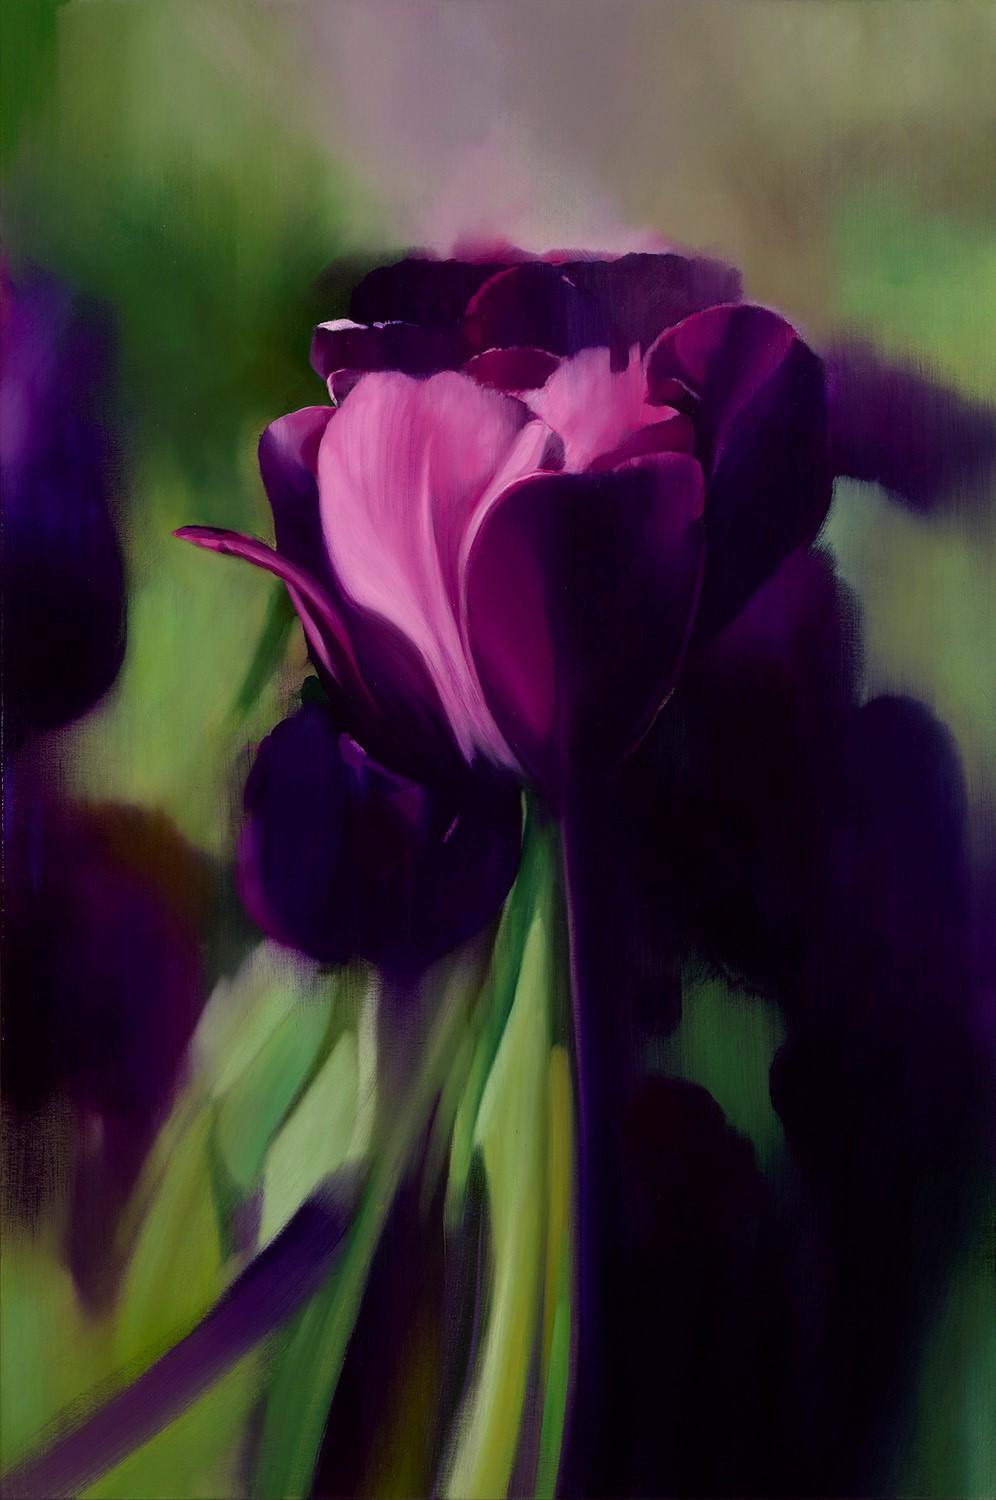 Tulips 160407-01 - Mixed Media Art by James Lahey